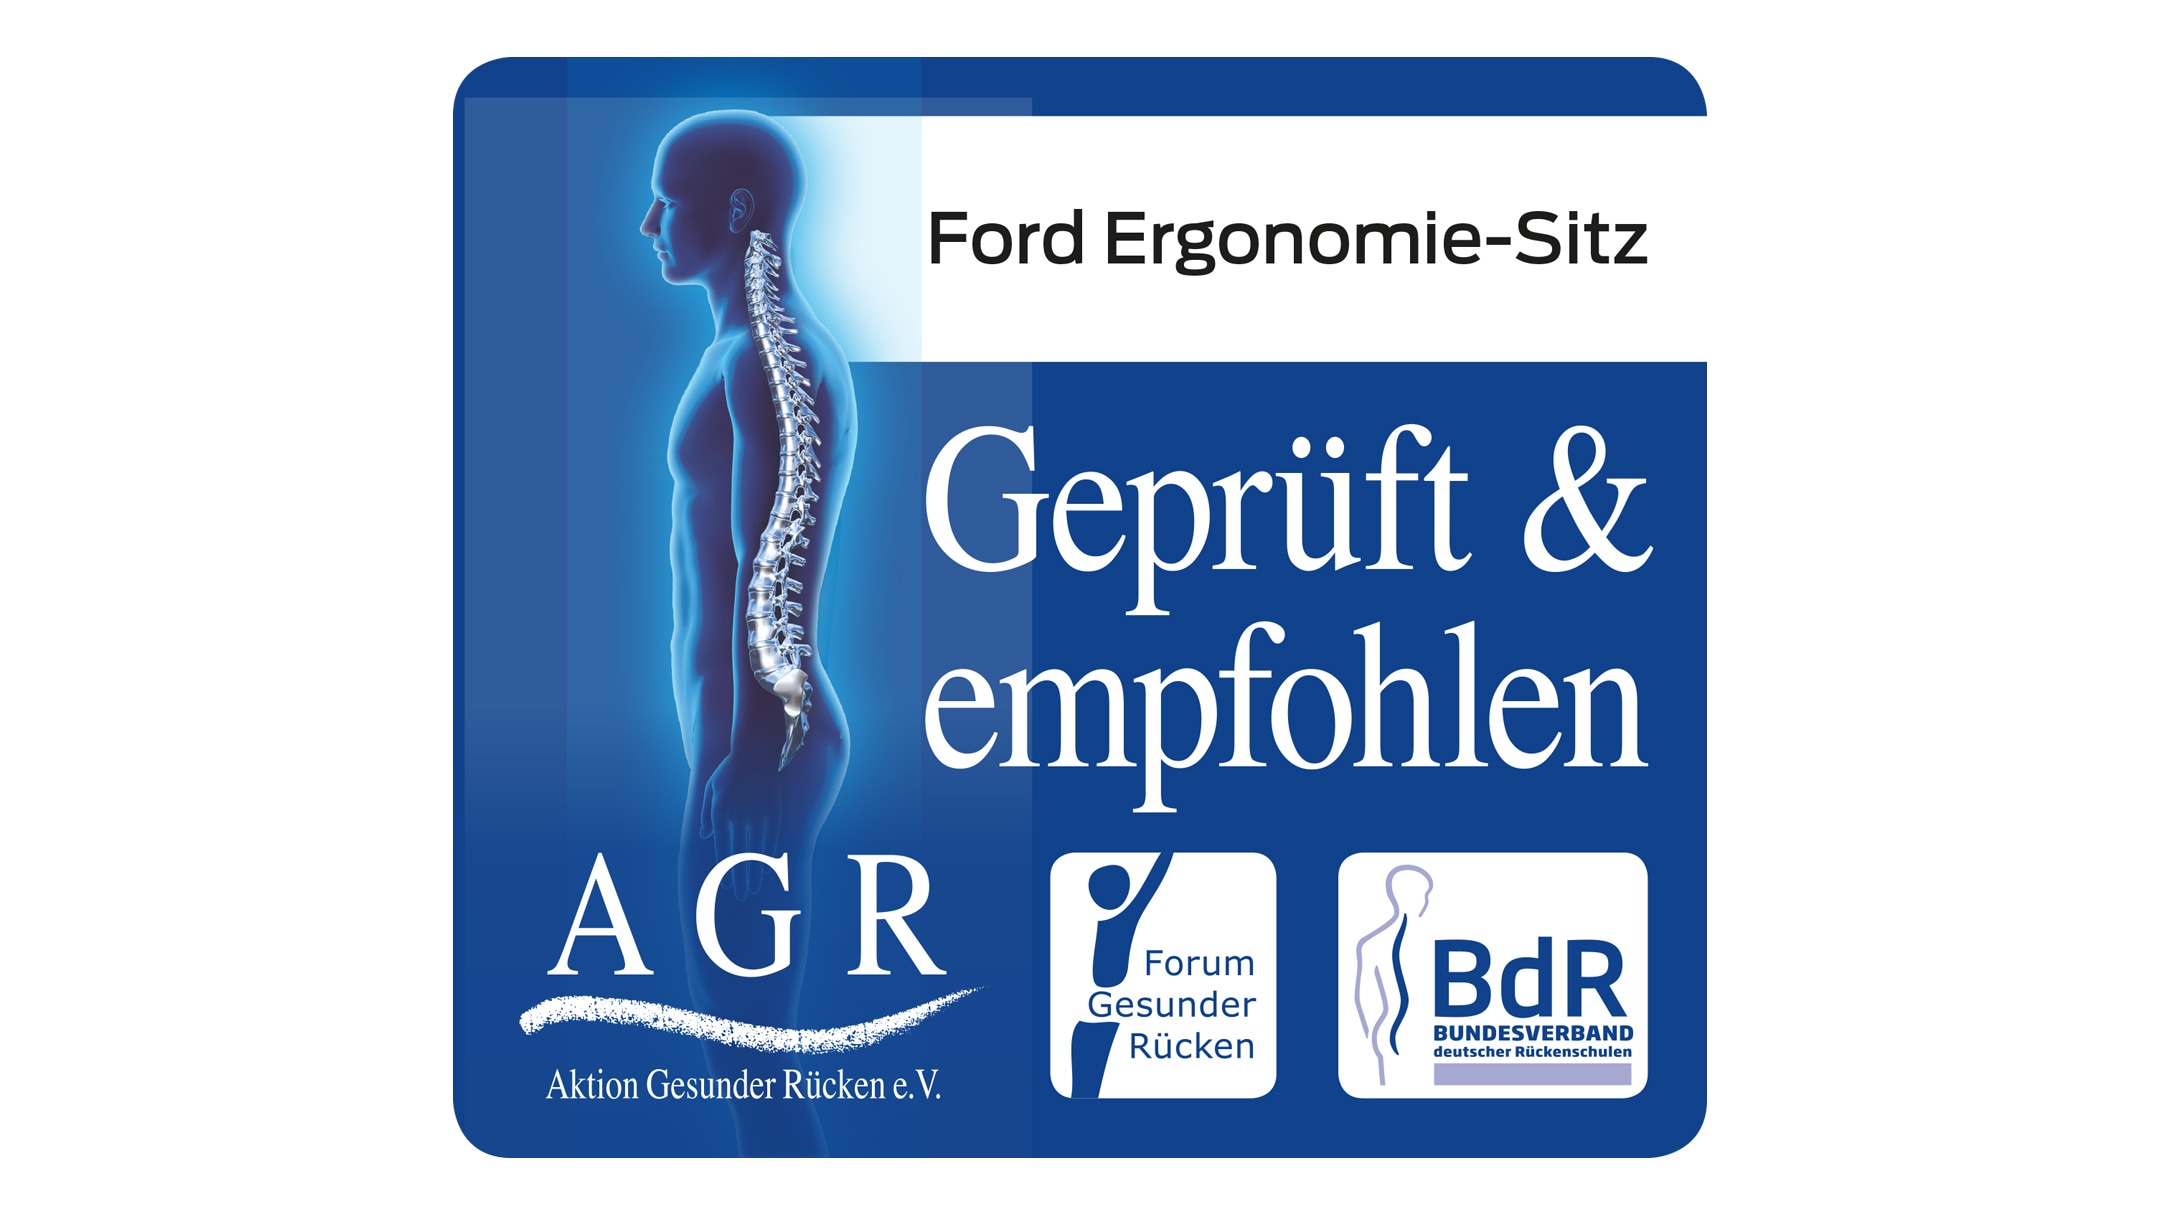 Ford Ergonomie-Sitz mit AGR Siegel